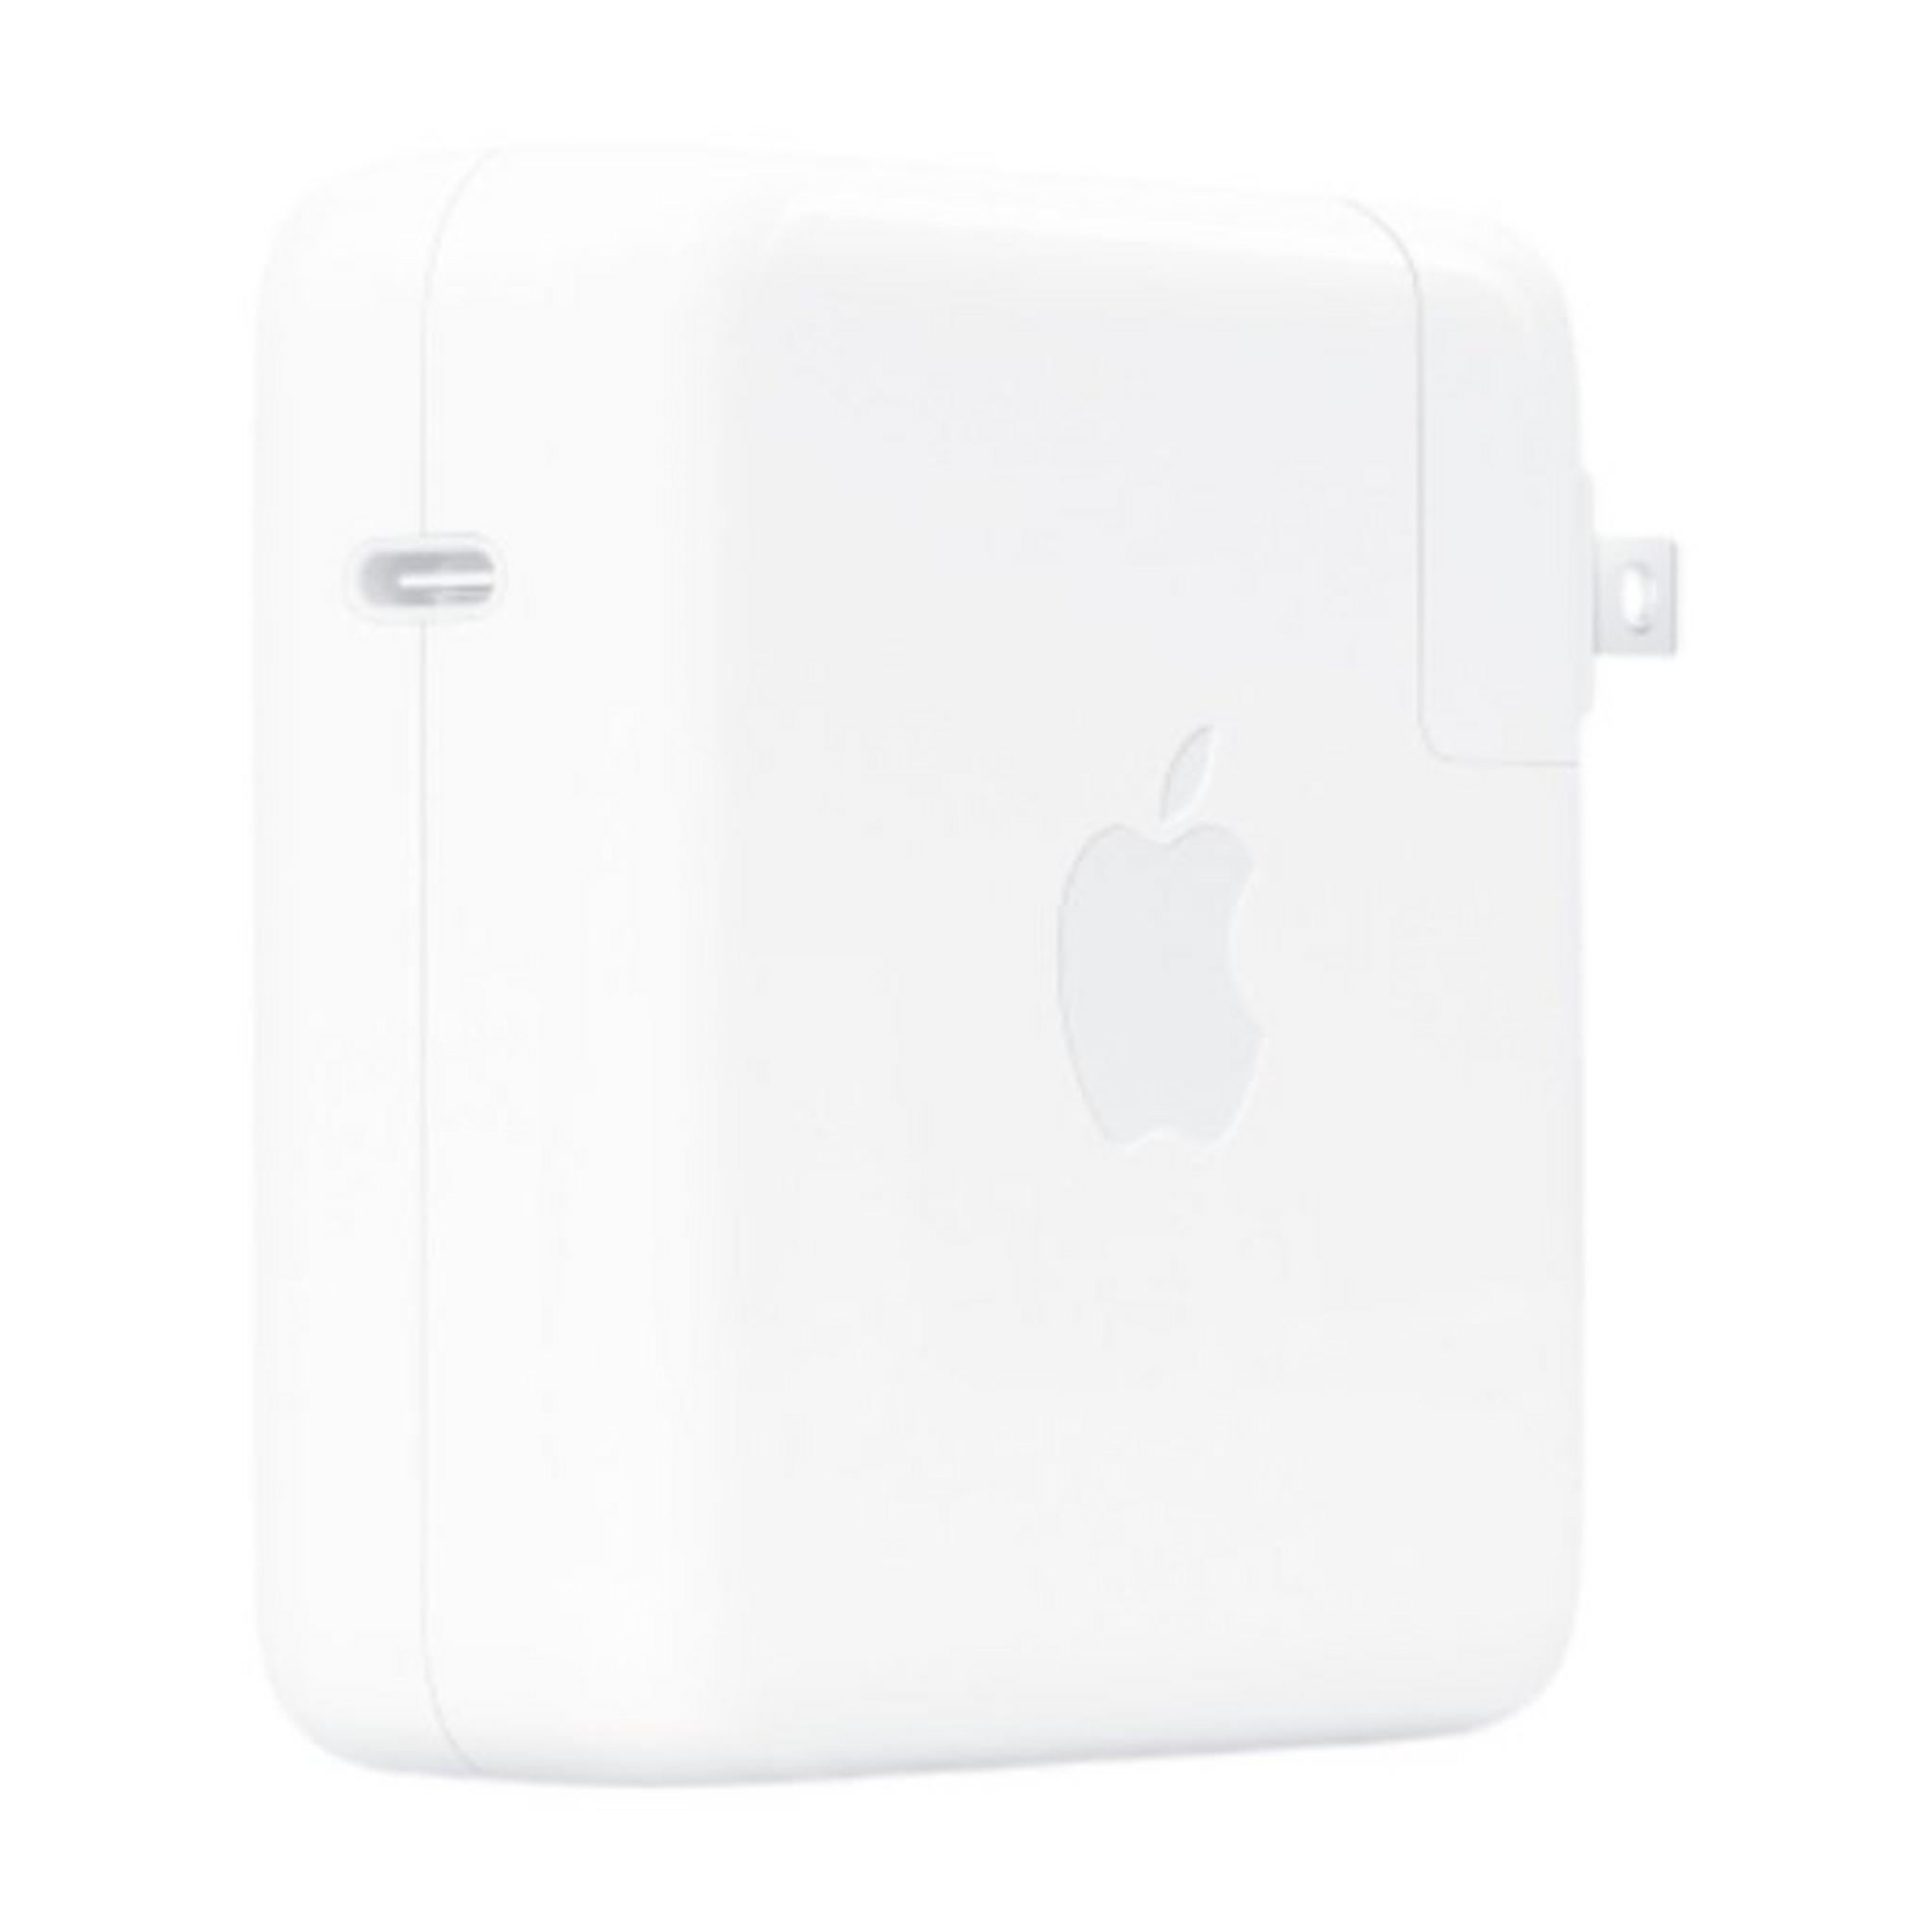 Apple 96W USB-C Power Adapter - White (MX0J2ZM/A)